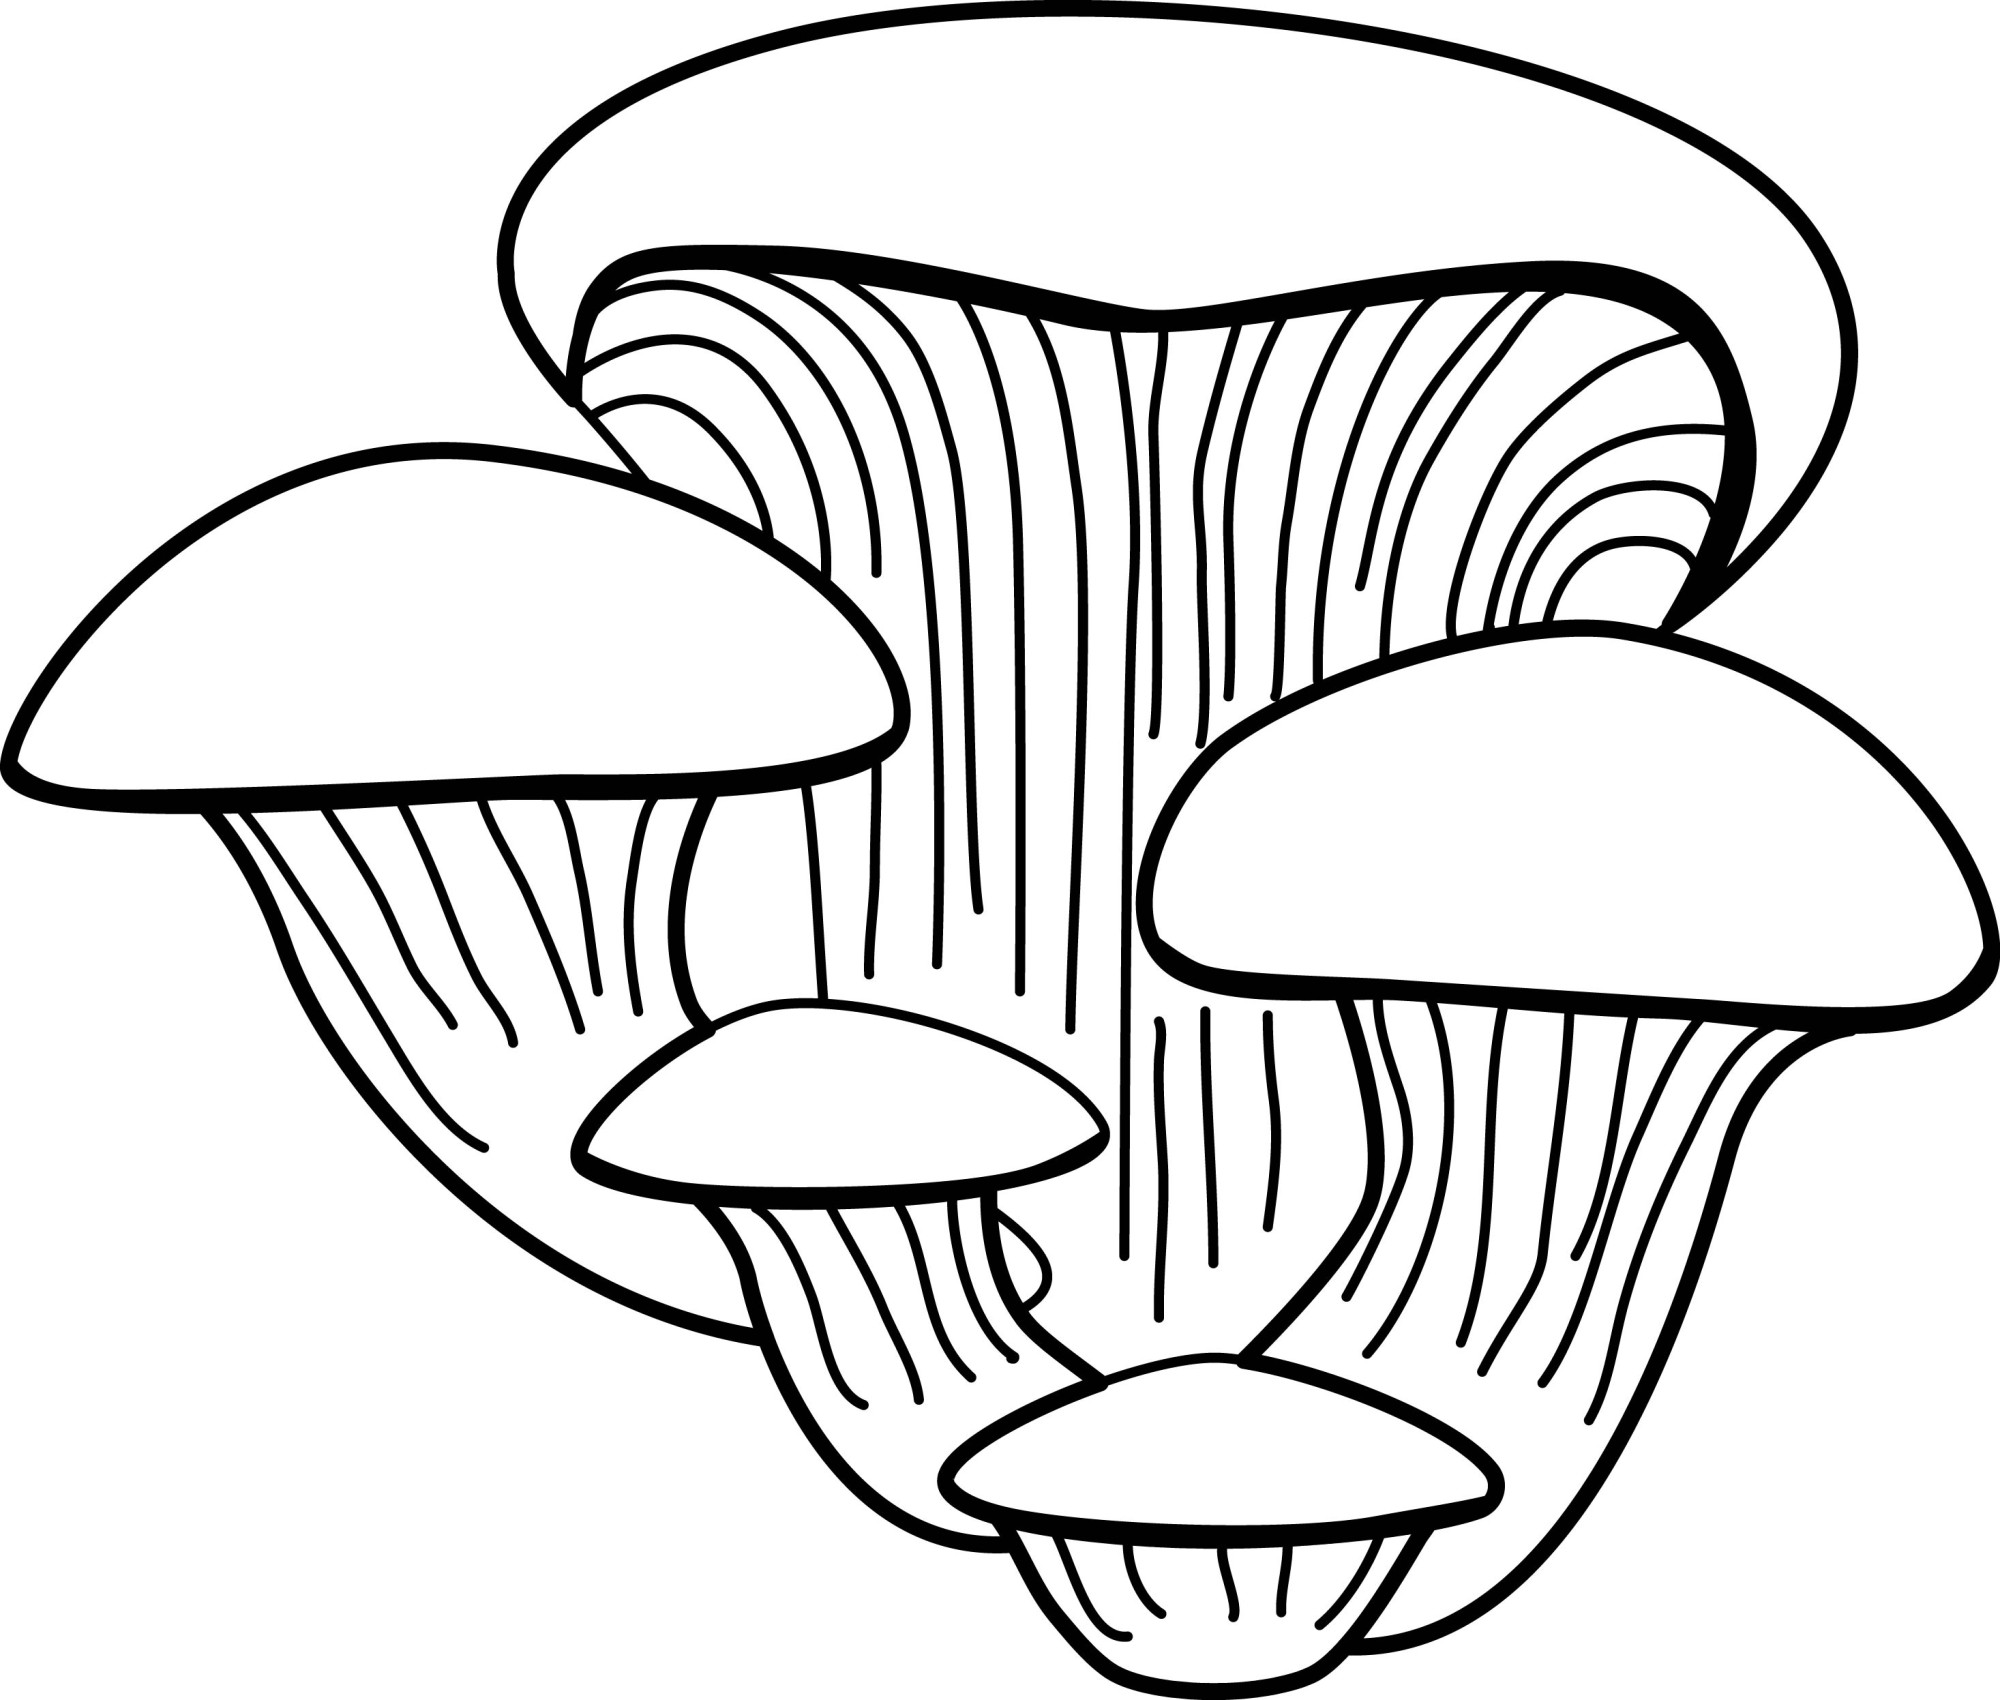 Раскраска для детей: гриб вёшенка